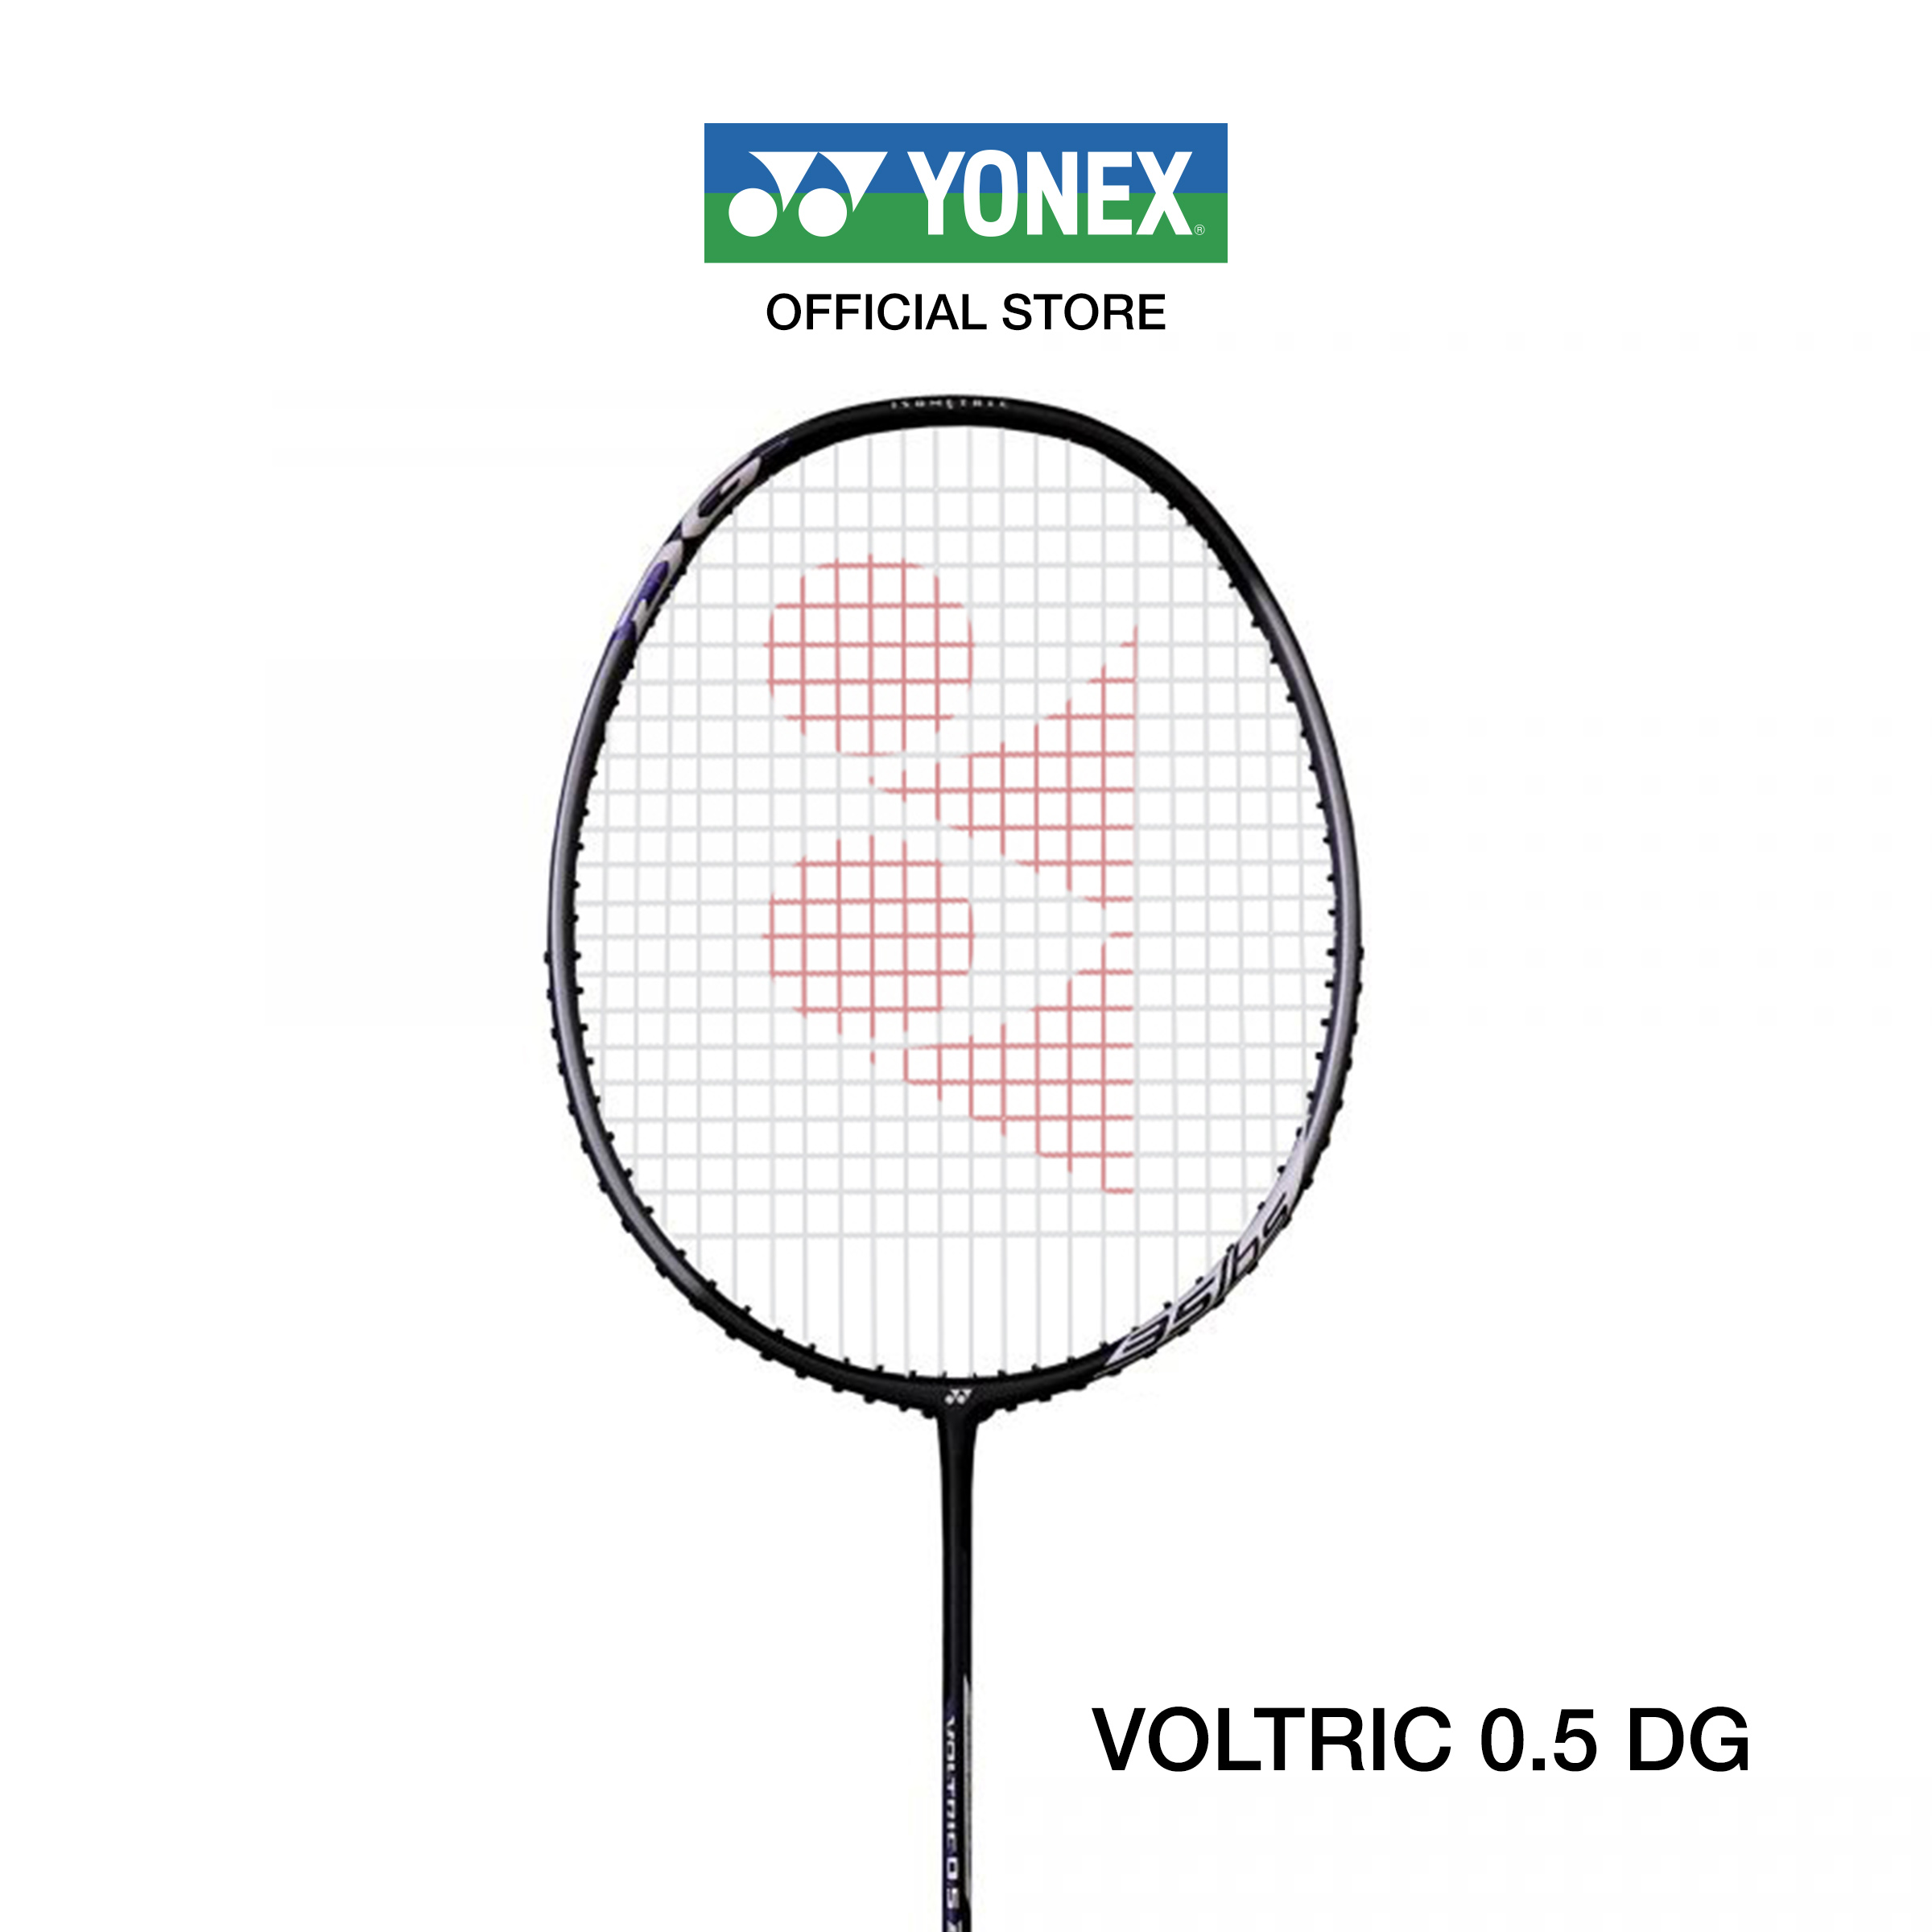 YONEX ไม้แบดมินตันรุ่น VOLTRIC  0.5 DG SLIM น้ำหนัก 83g (4U) ขนาดด้ามไม้ G4 ไม้หัวหนักและก้านอ่อน ไม้สามารถขึ้นได้สูงสุด 35 Ibs แถมเอ็น BG65